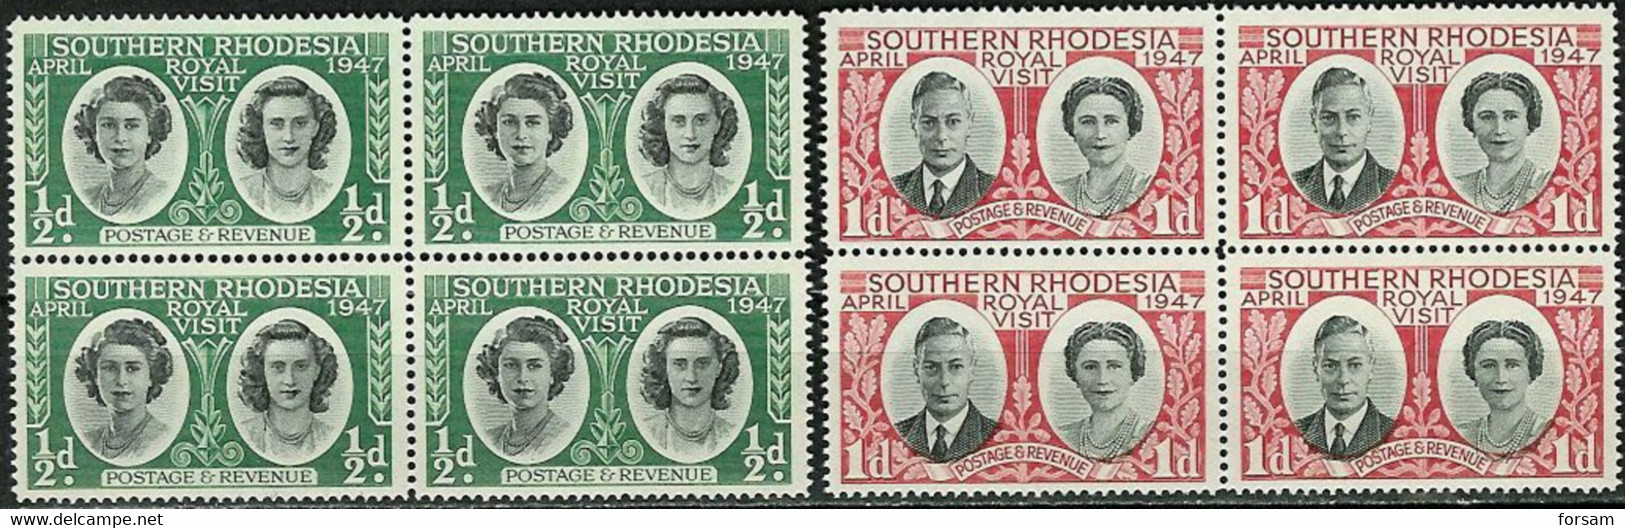 SOUTHERN RHODESIA..1947..Michel # 64-65..MNH. - Southern Rhodesia (...-1964)